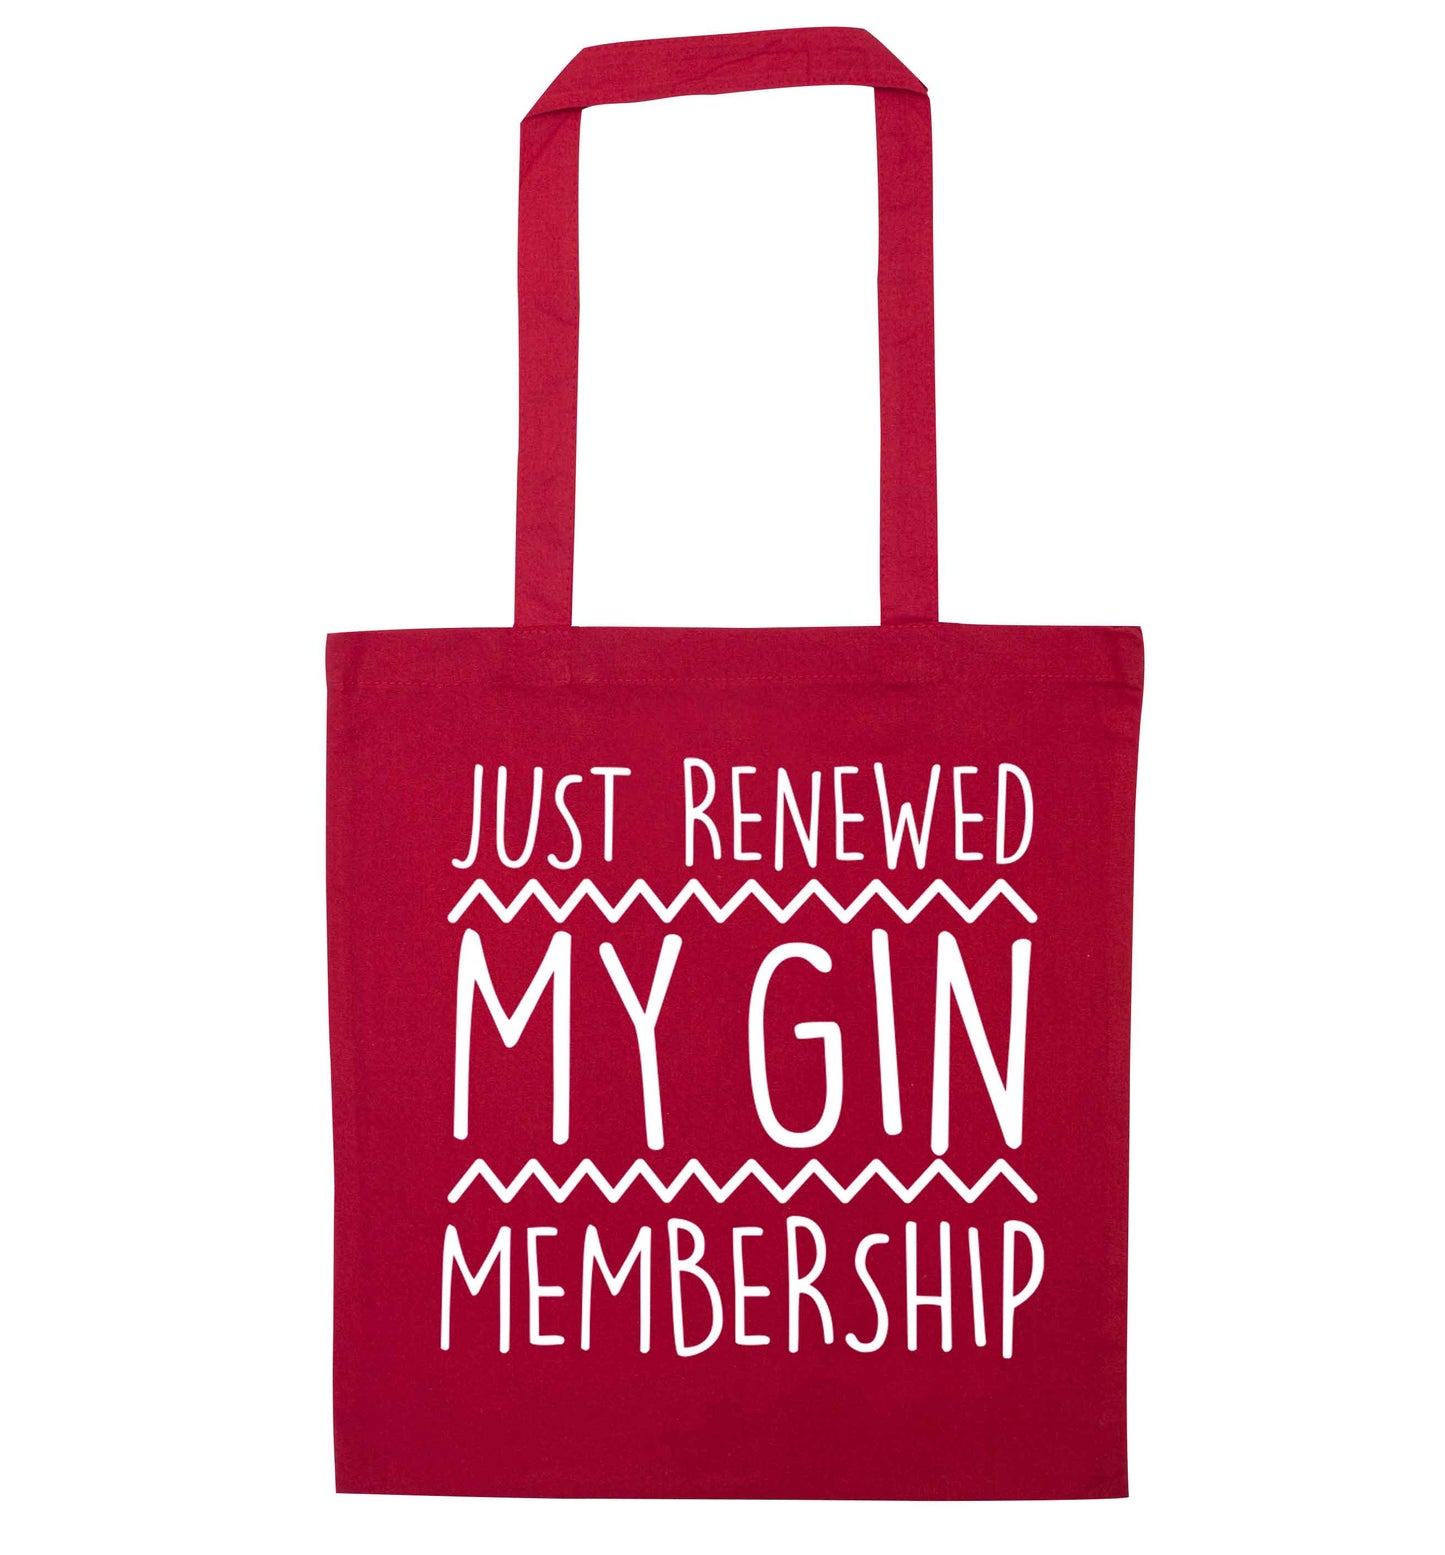 Just renewed my gin membership red tote bag